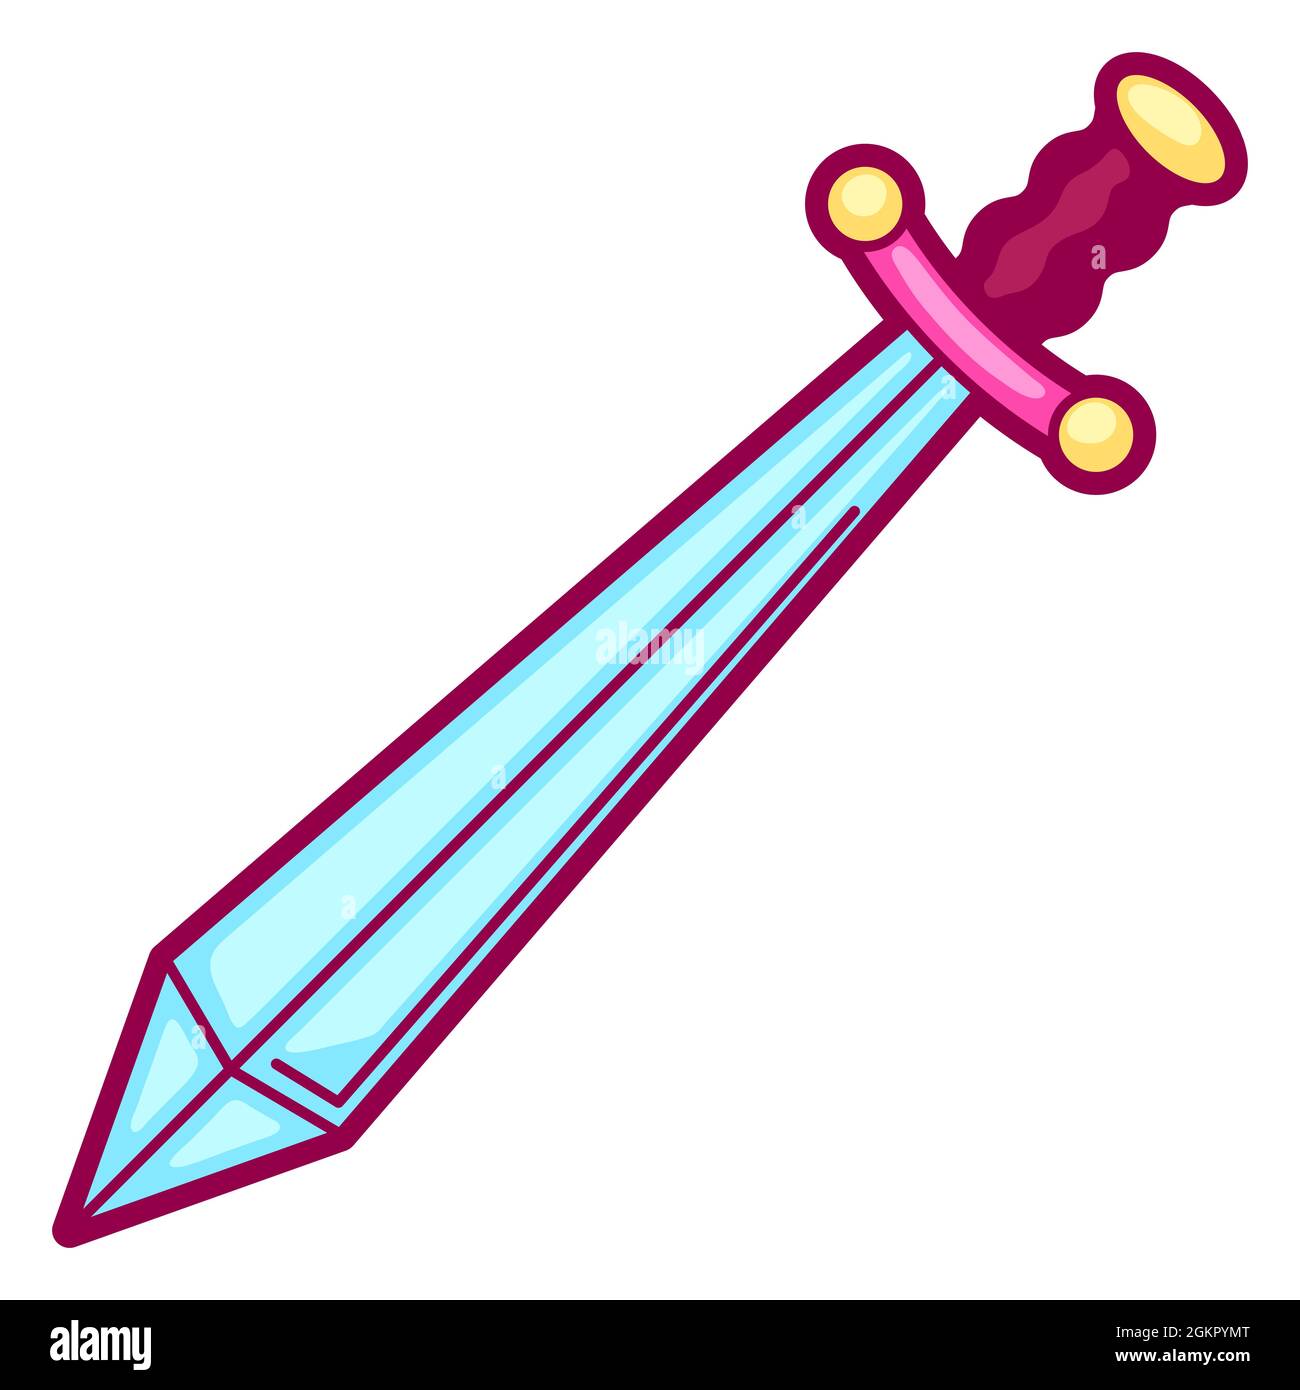 Ilustración de espada en estilo de dibujos animados. Lindo objeto divertido  Imagen Vector de stock - Alamy